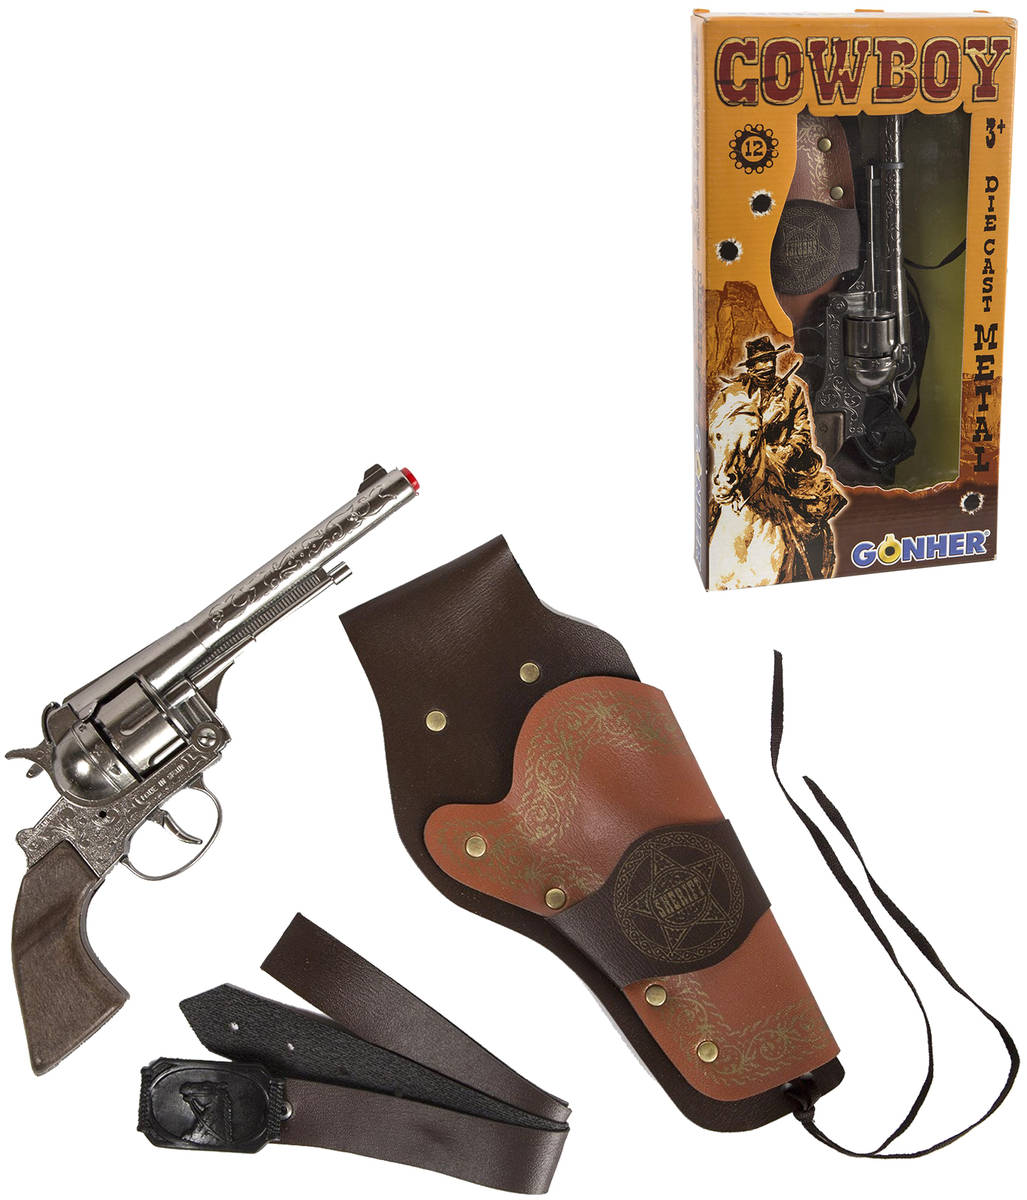 Kovbojský set revolver dětský kovový na kapsle 12 ran s pouzdrem a opaskem